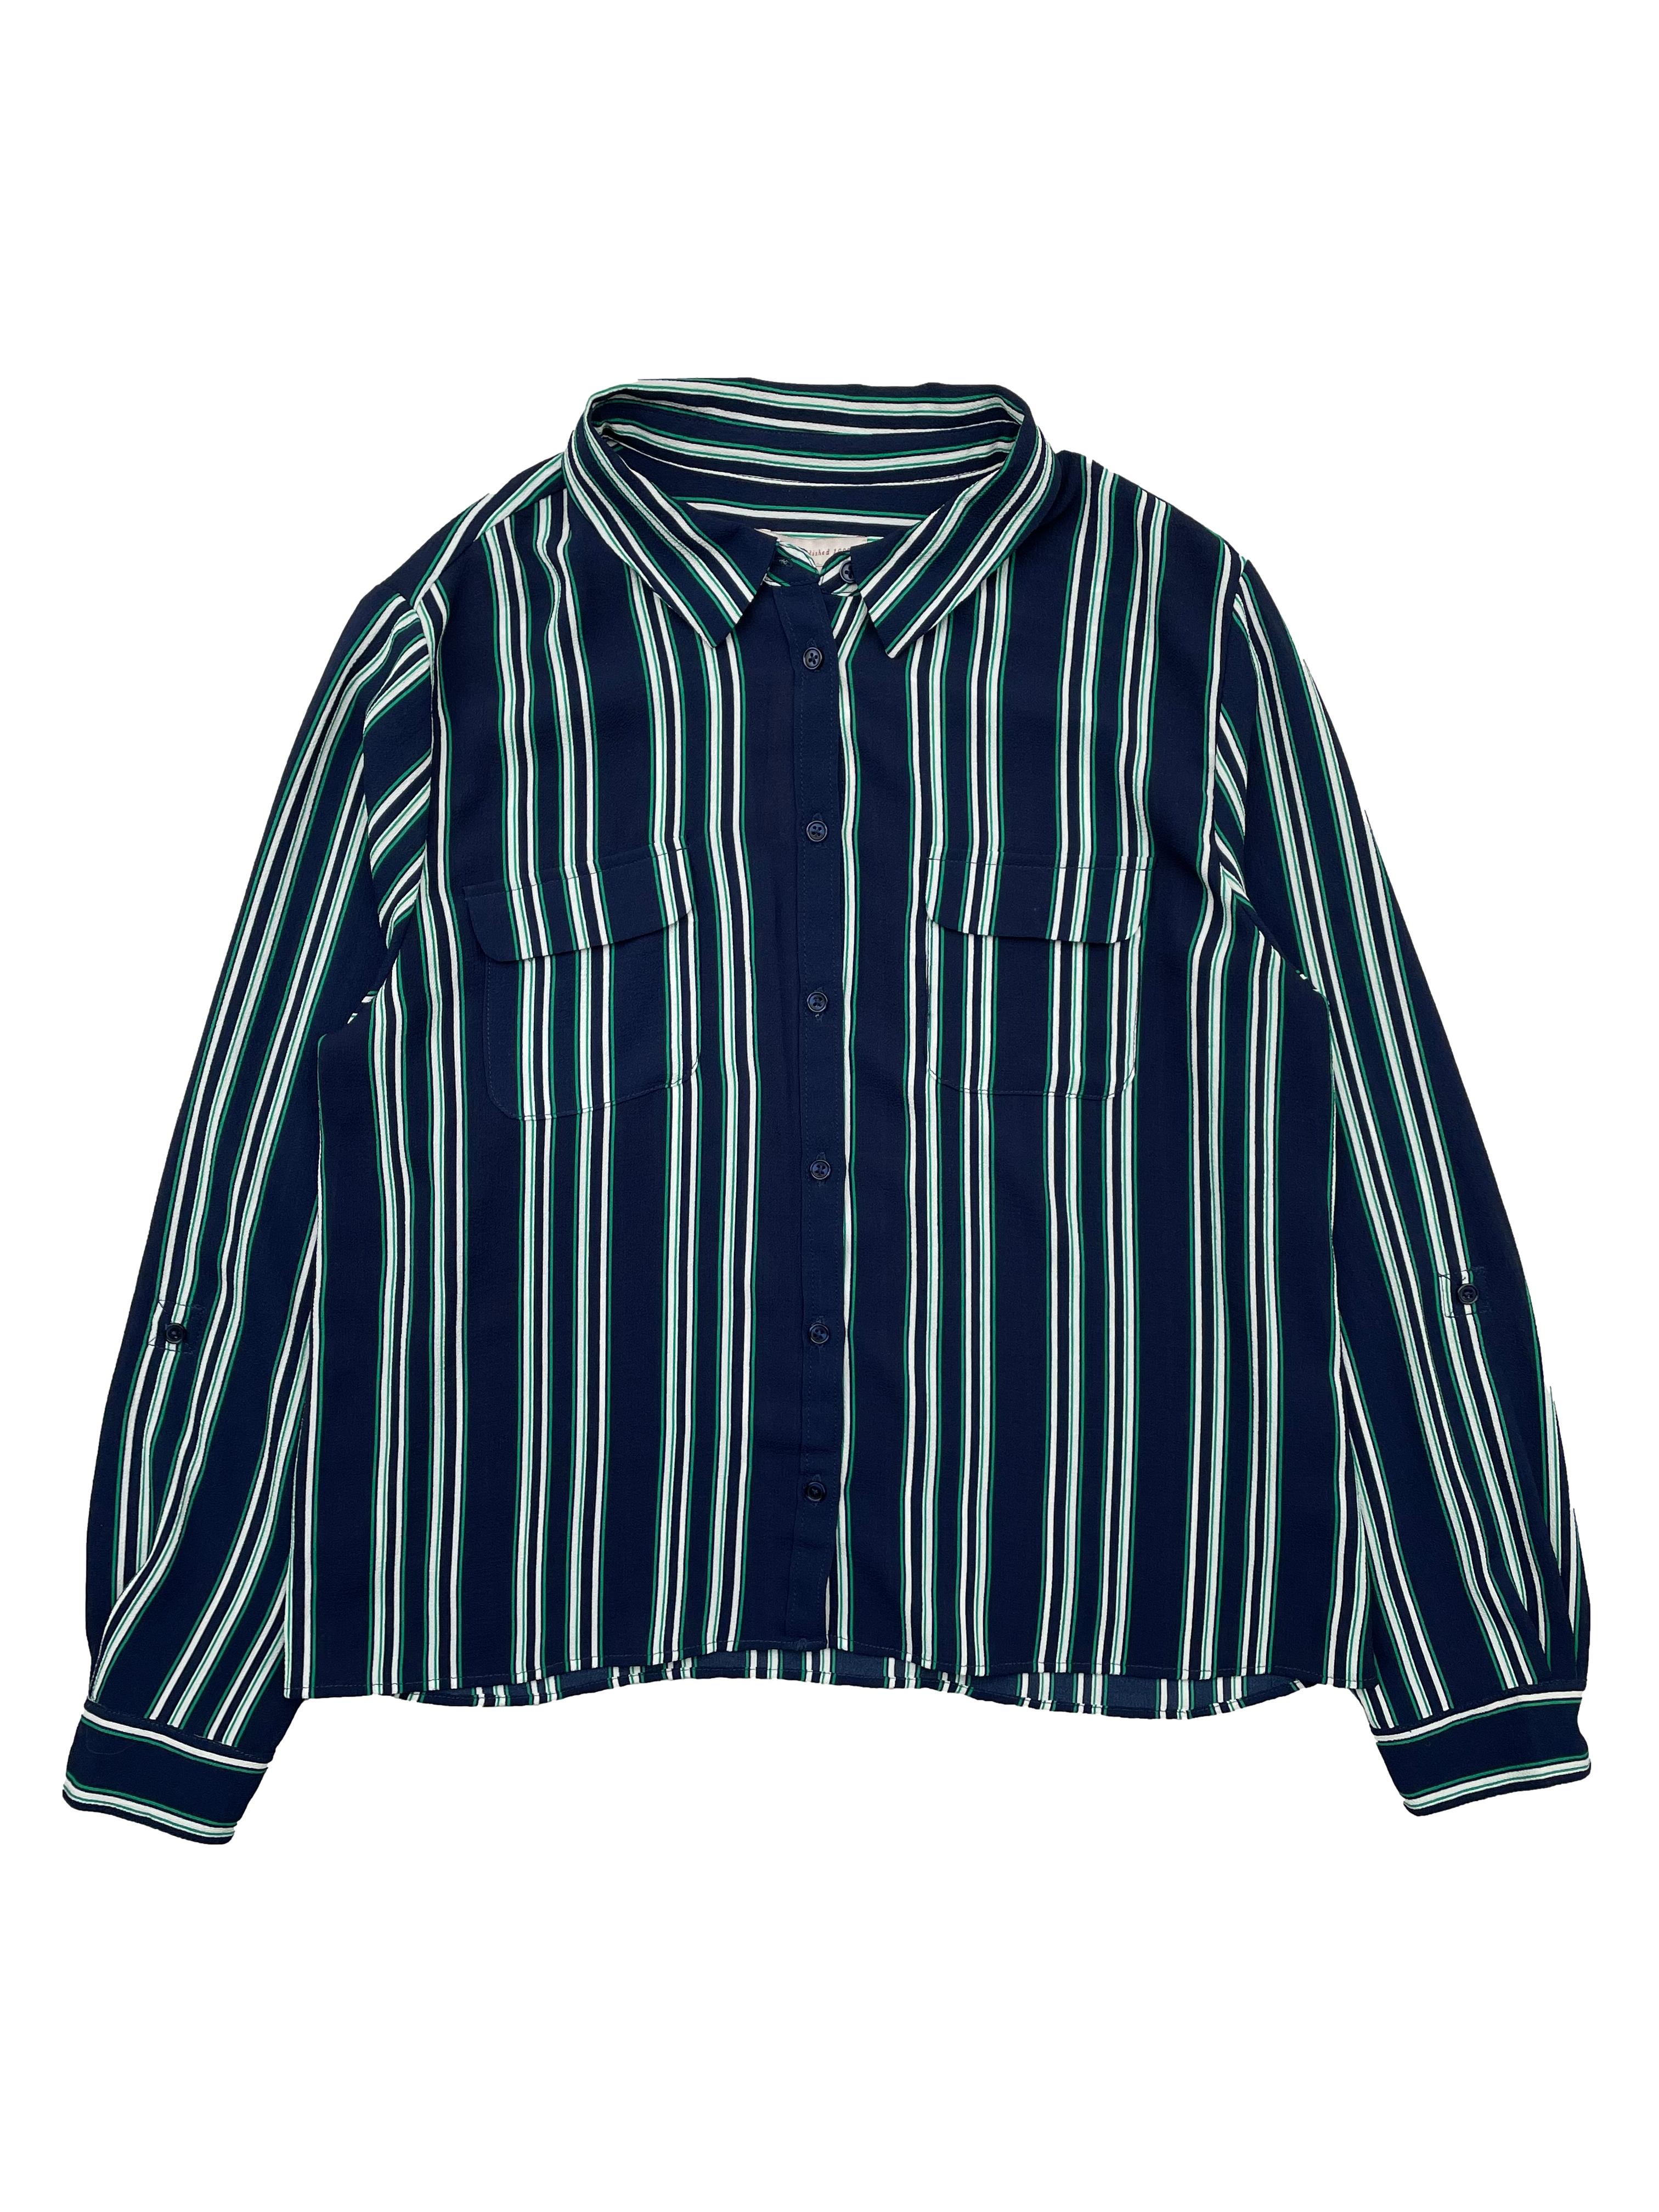 Blusa azul marino de crepé con rayas en verde blanco, bolsillos frontales. Busto 104cm, Largo 55cm. Las Traperas